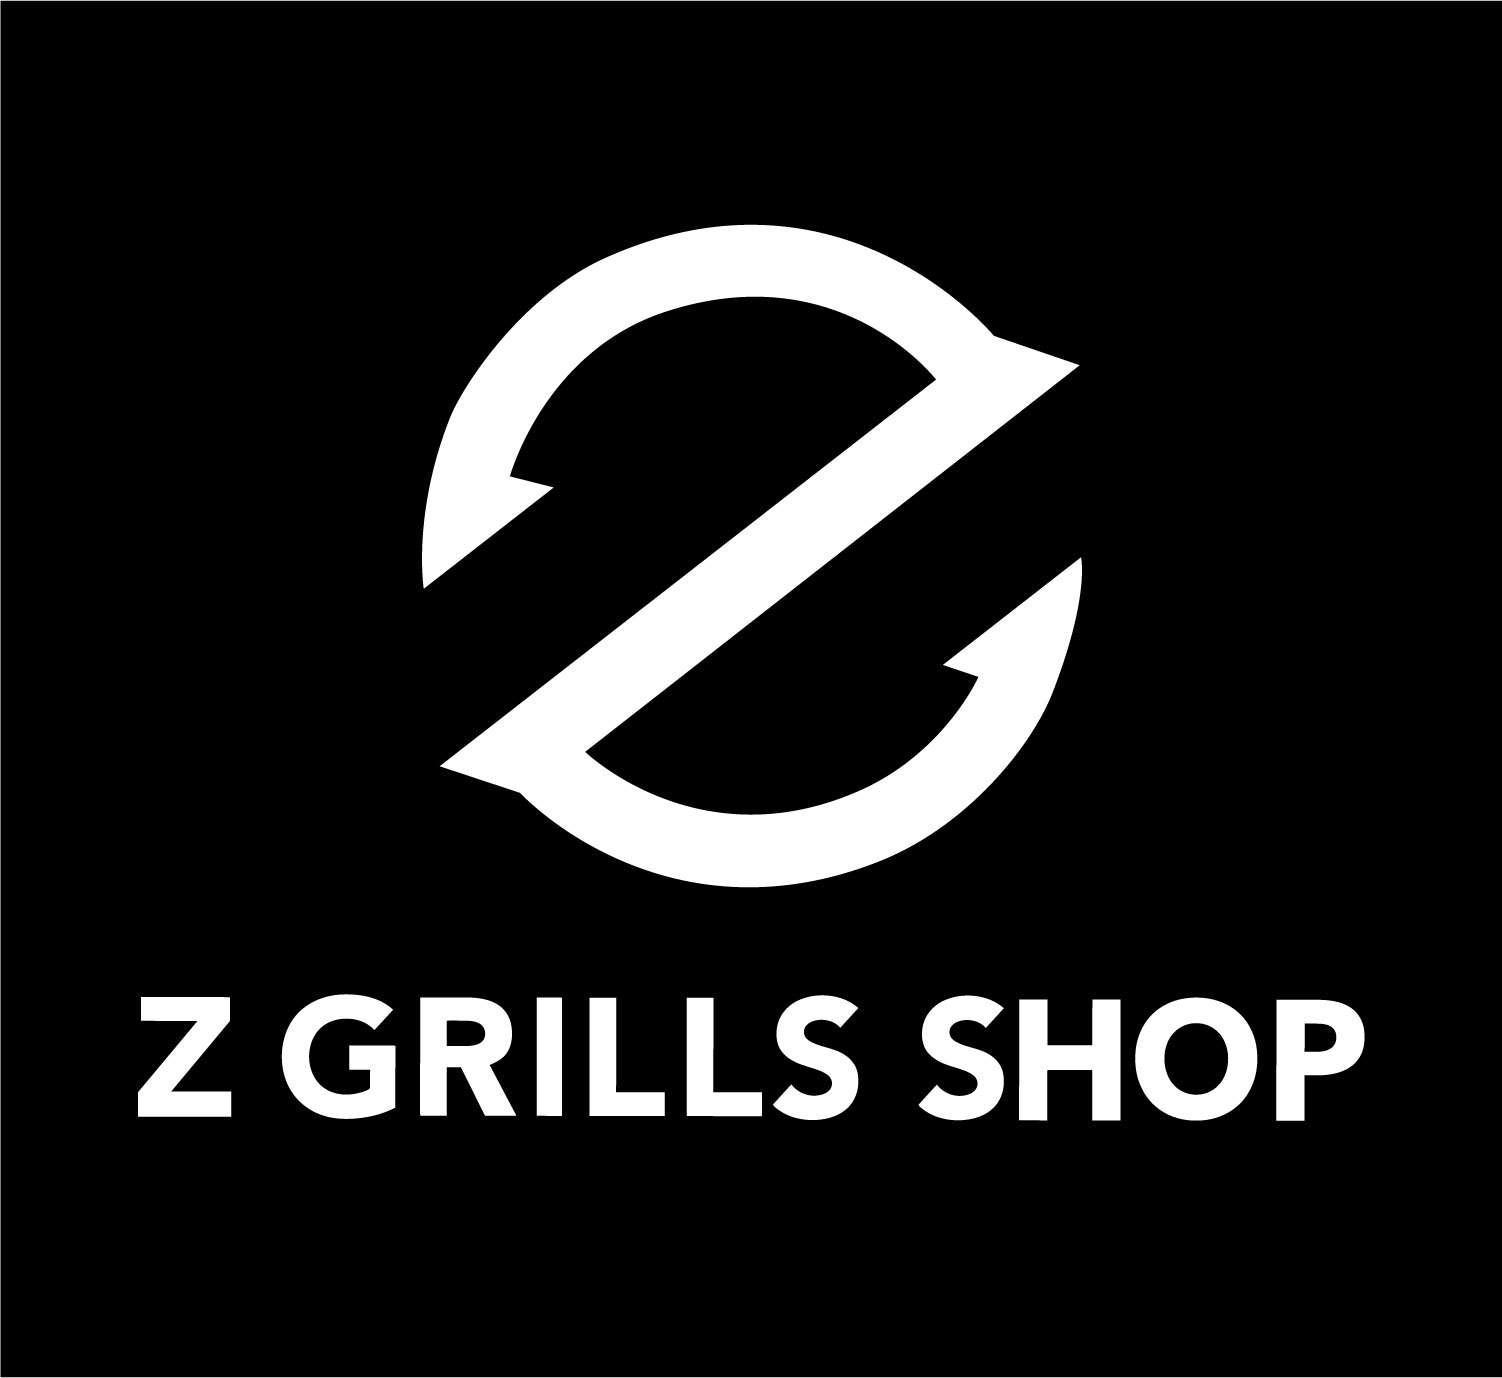 ZG Shop Blc Fd Noir Avec Logo